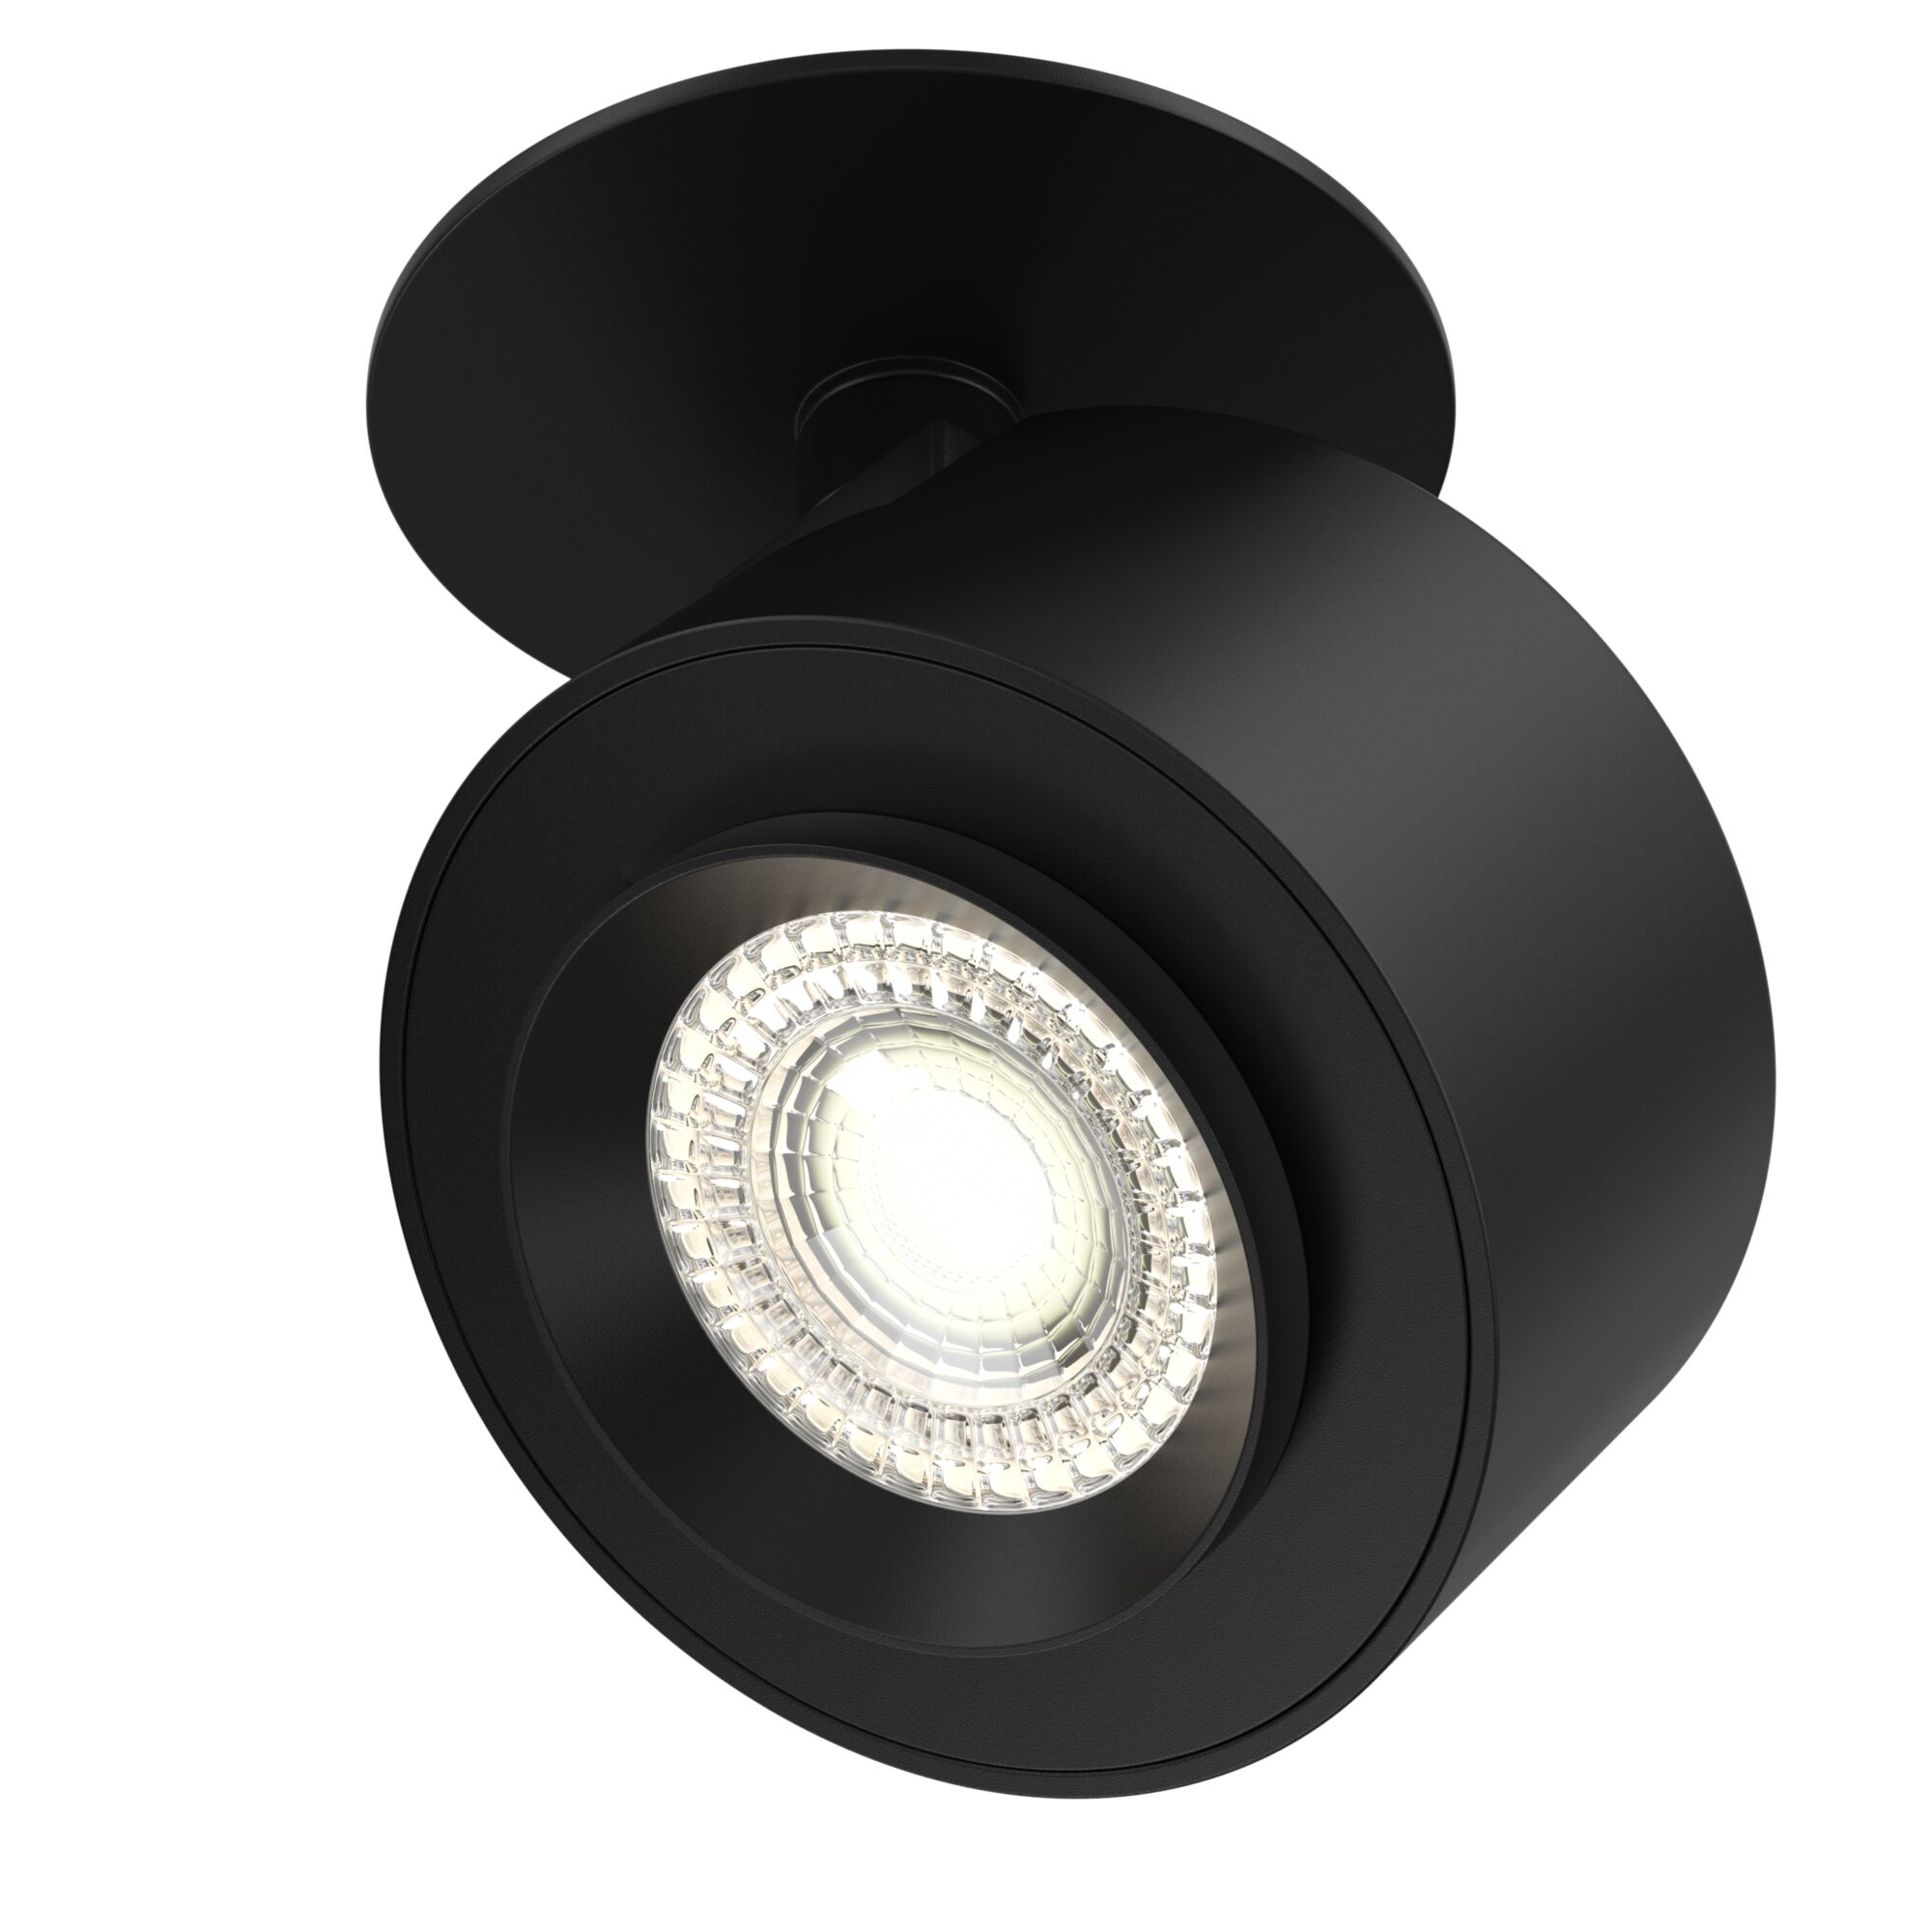 Потолочный светильник Treo 1x13Вт 3000K, C063CL-L12B3K набор аксессуаров для ванной комнаты бесконечность 4 предмета дозатор 400 мл мыльница 2 стакана чёрный